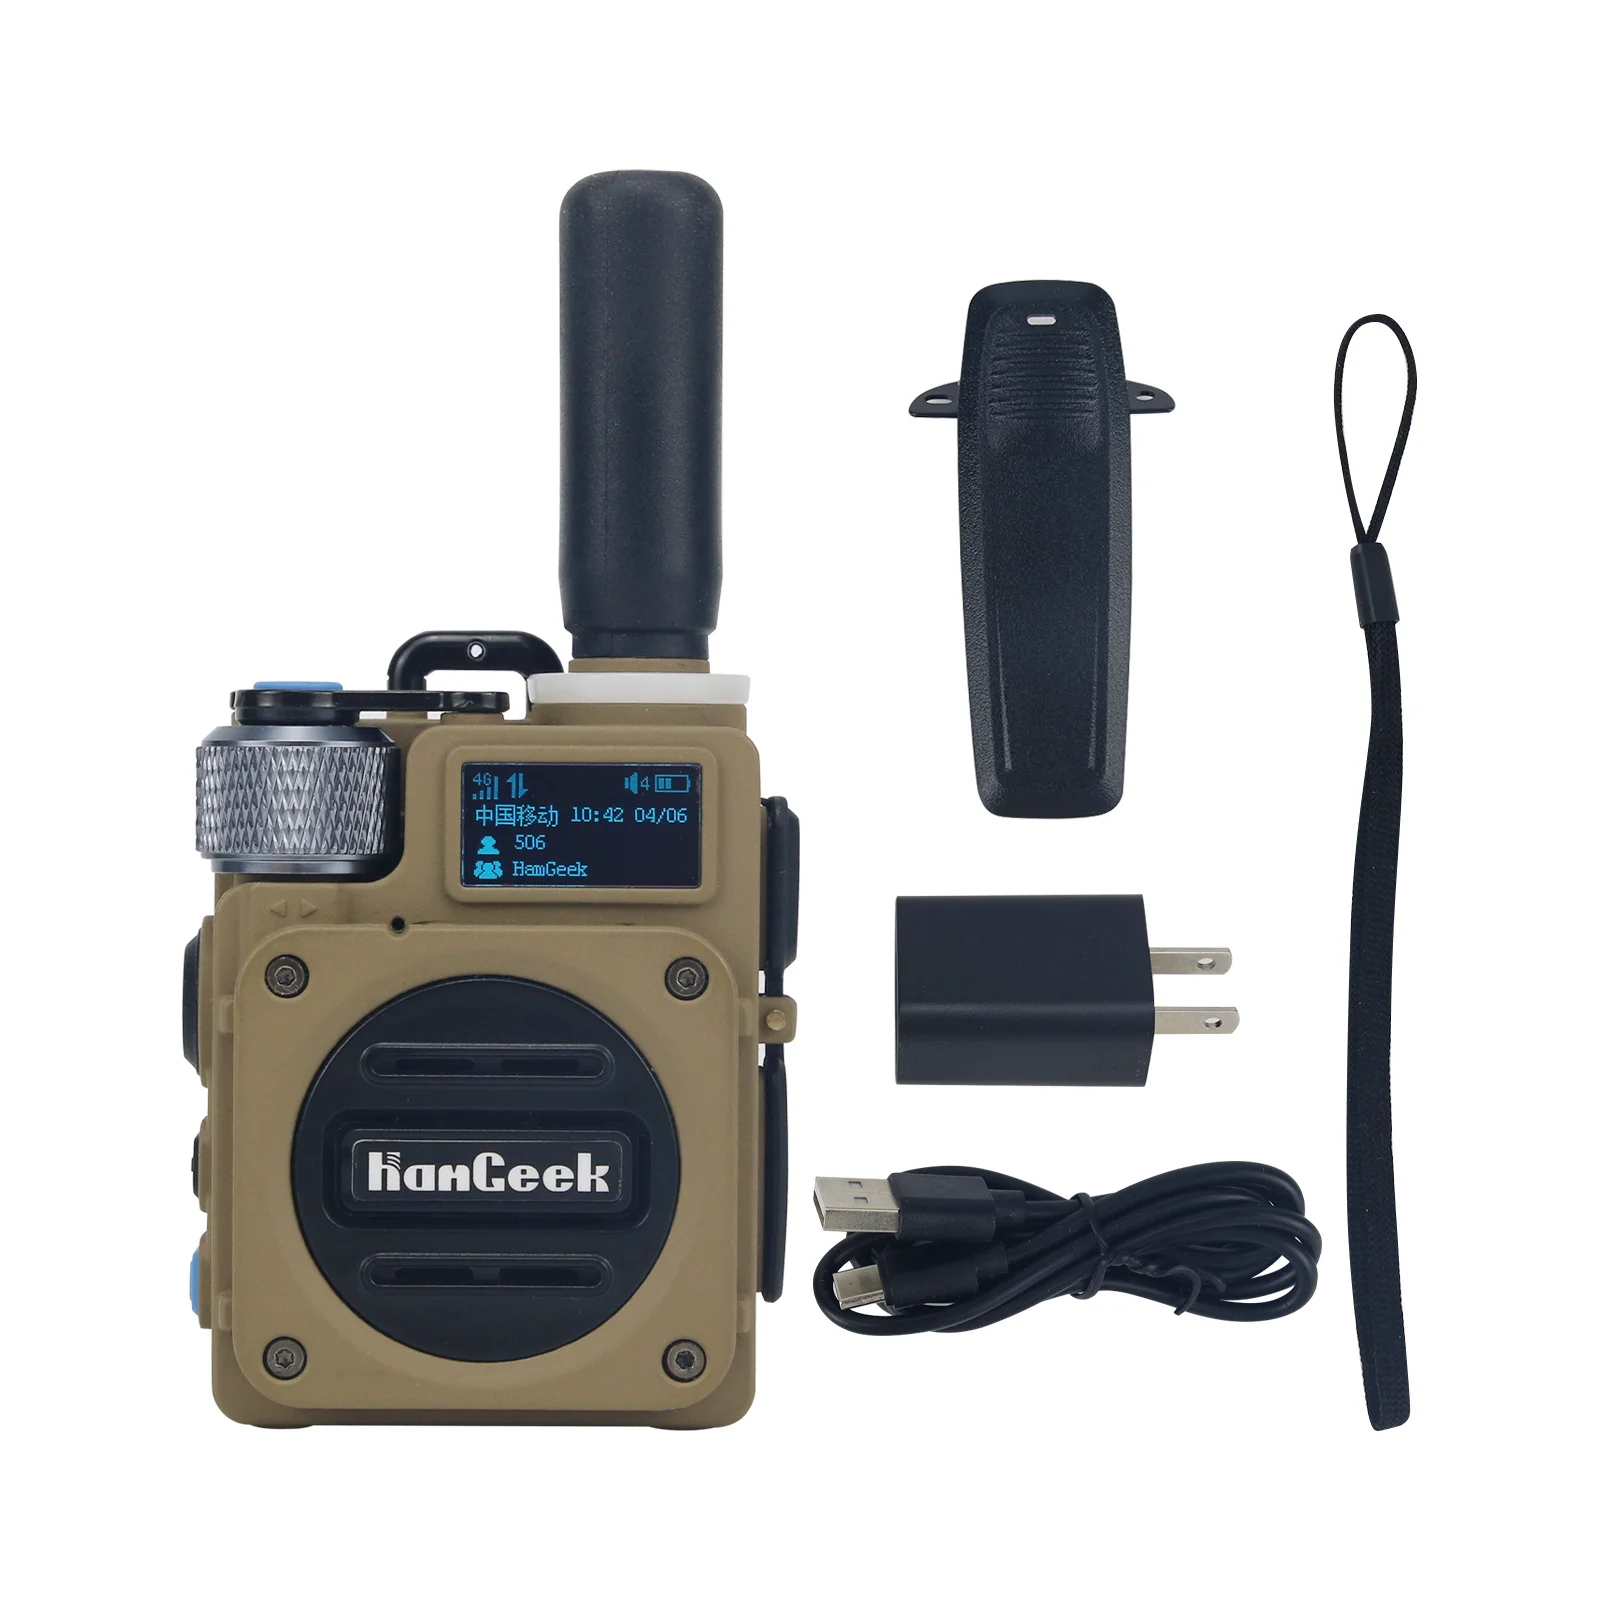 

HamGeek Mini HG600 10W 5000KM 4G POC Radio Mini Walkie Talkie Handheld Transceiver for Road Trips